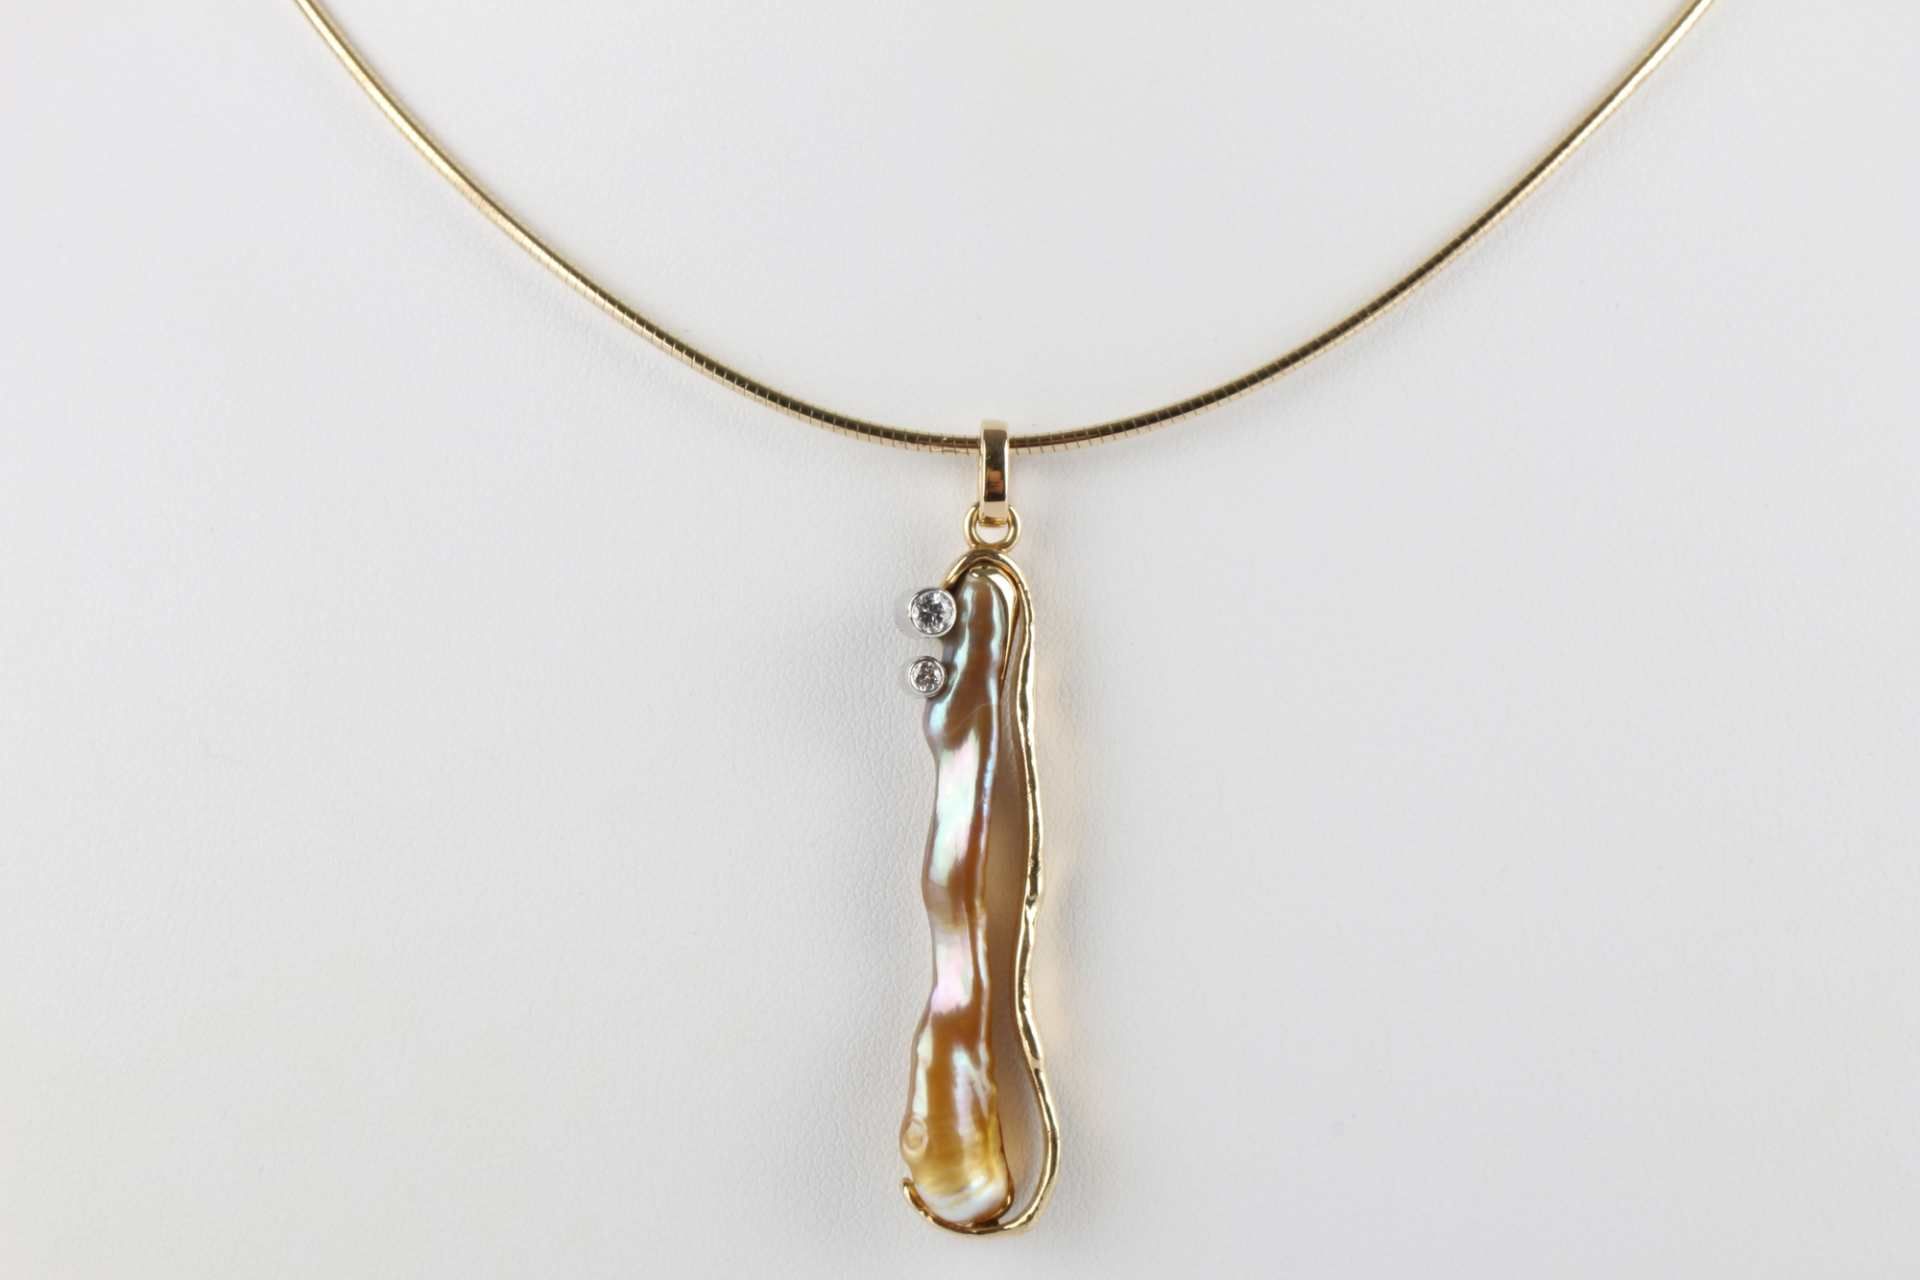 585 Gold Collier, Anhänger Biwa Perle mit zwei Brillanten 0,12 ct an Goldkette, gold necklace, - Image 3 of 5